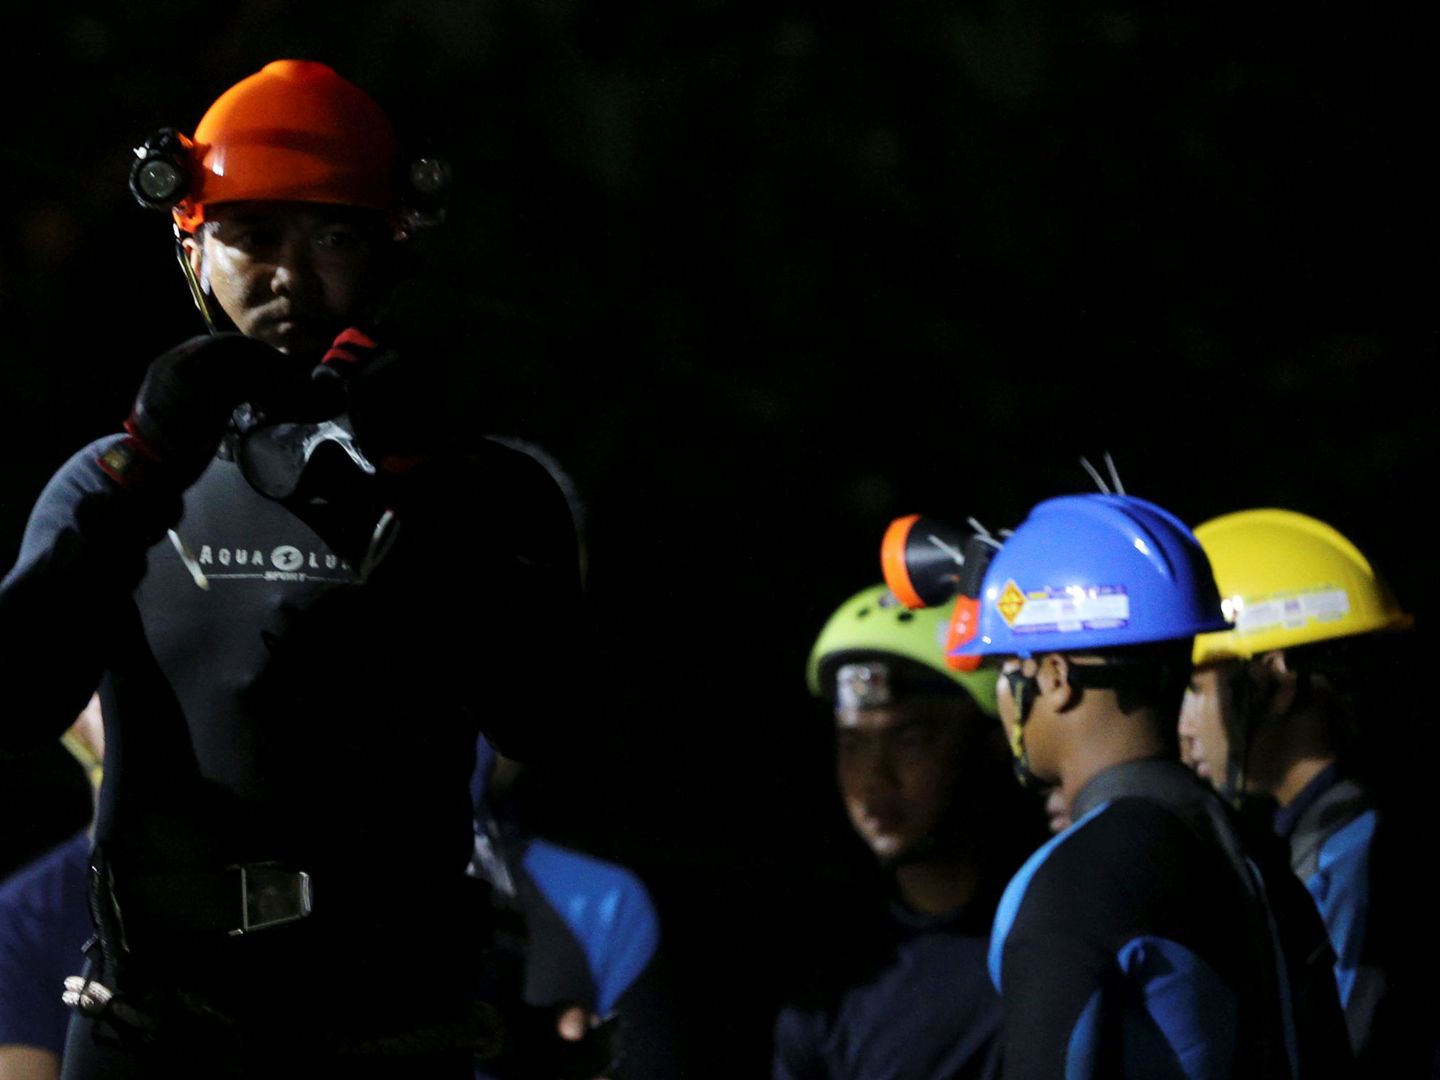 Buzos tailandeses se preparan para entrar en la cueva. (Reuters)